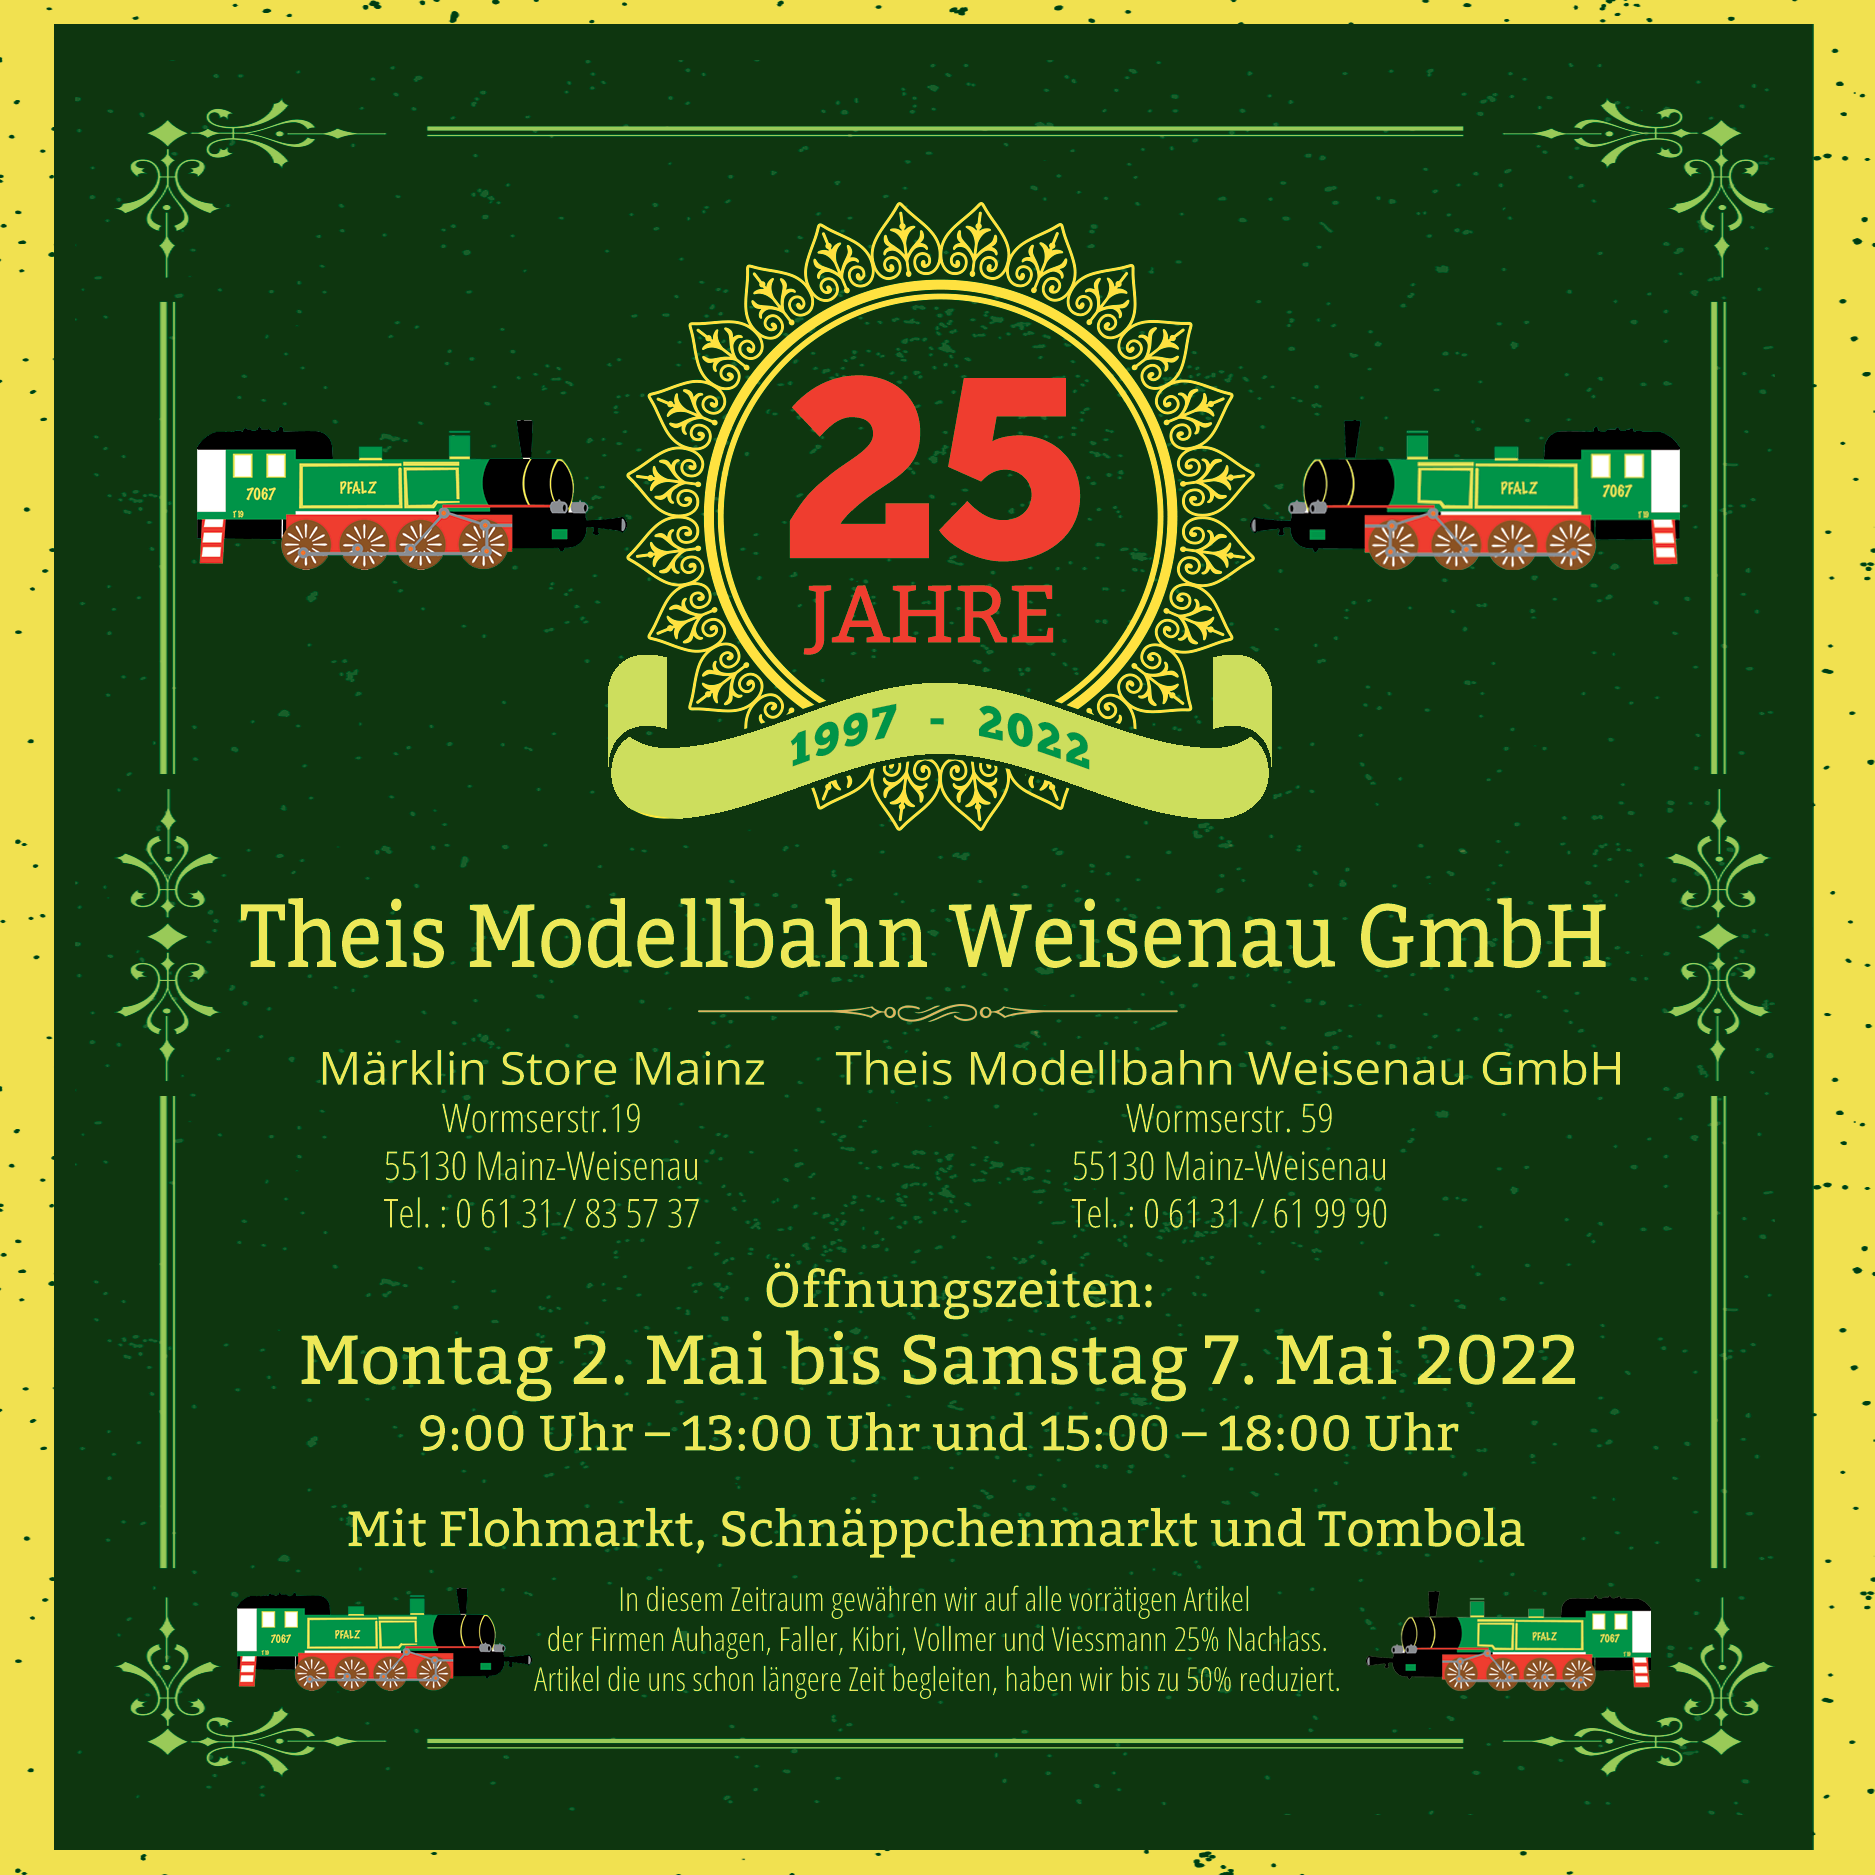 Theis-Modellbahn-Weisenau-GmbH-25Jahre